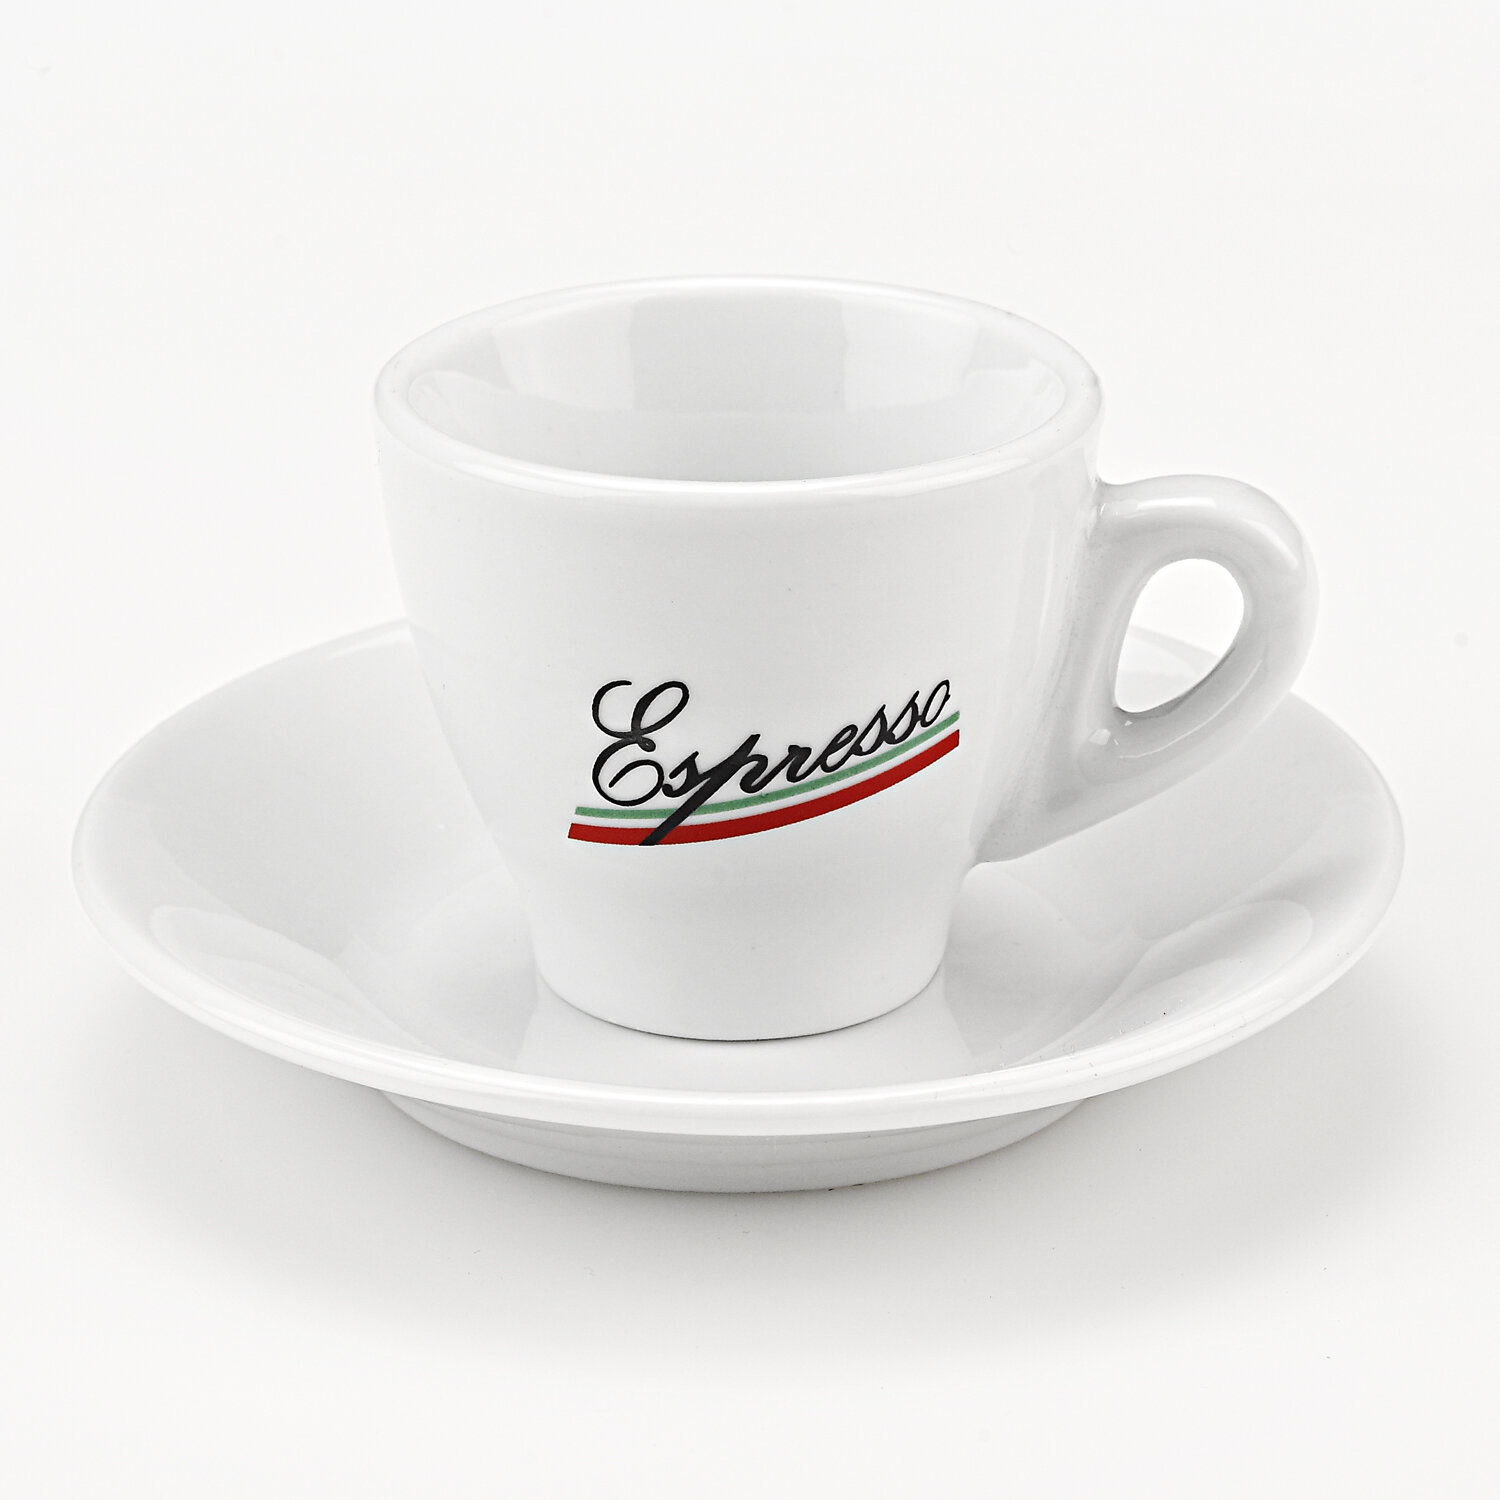 https://assets.wfcdn.com/im/42765473/compr-r85/3593/35935020/porcelain-espresso-cup.jpg